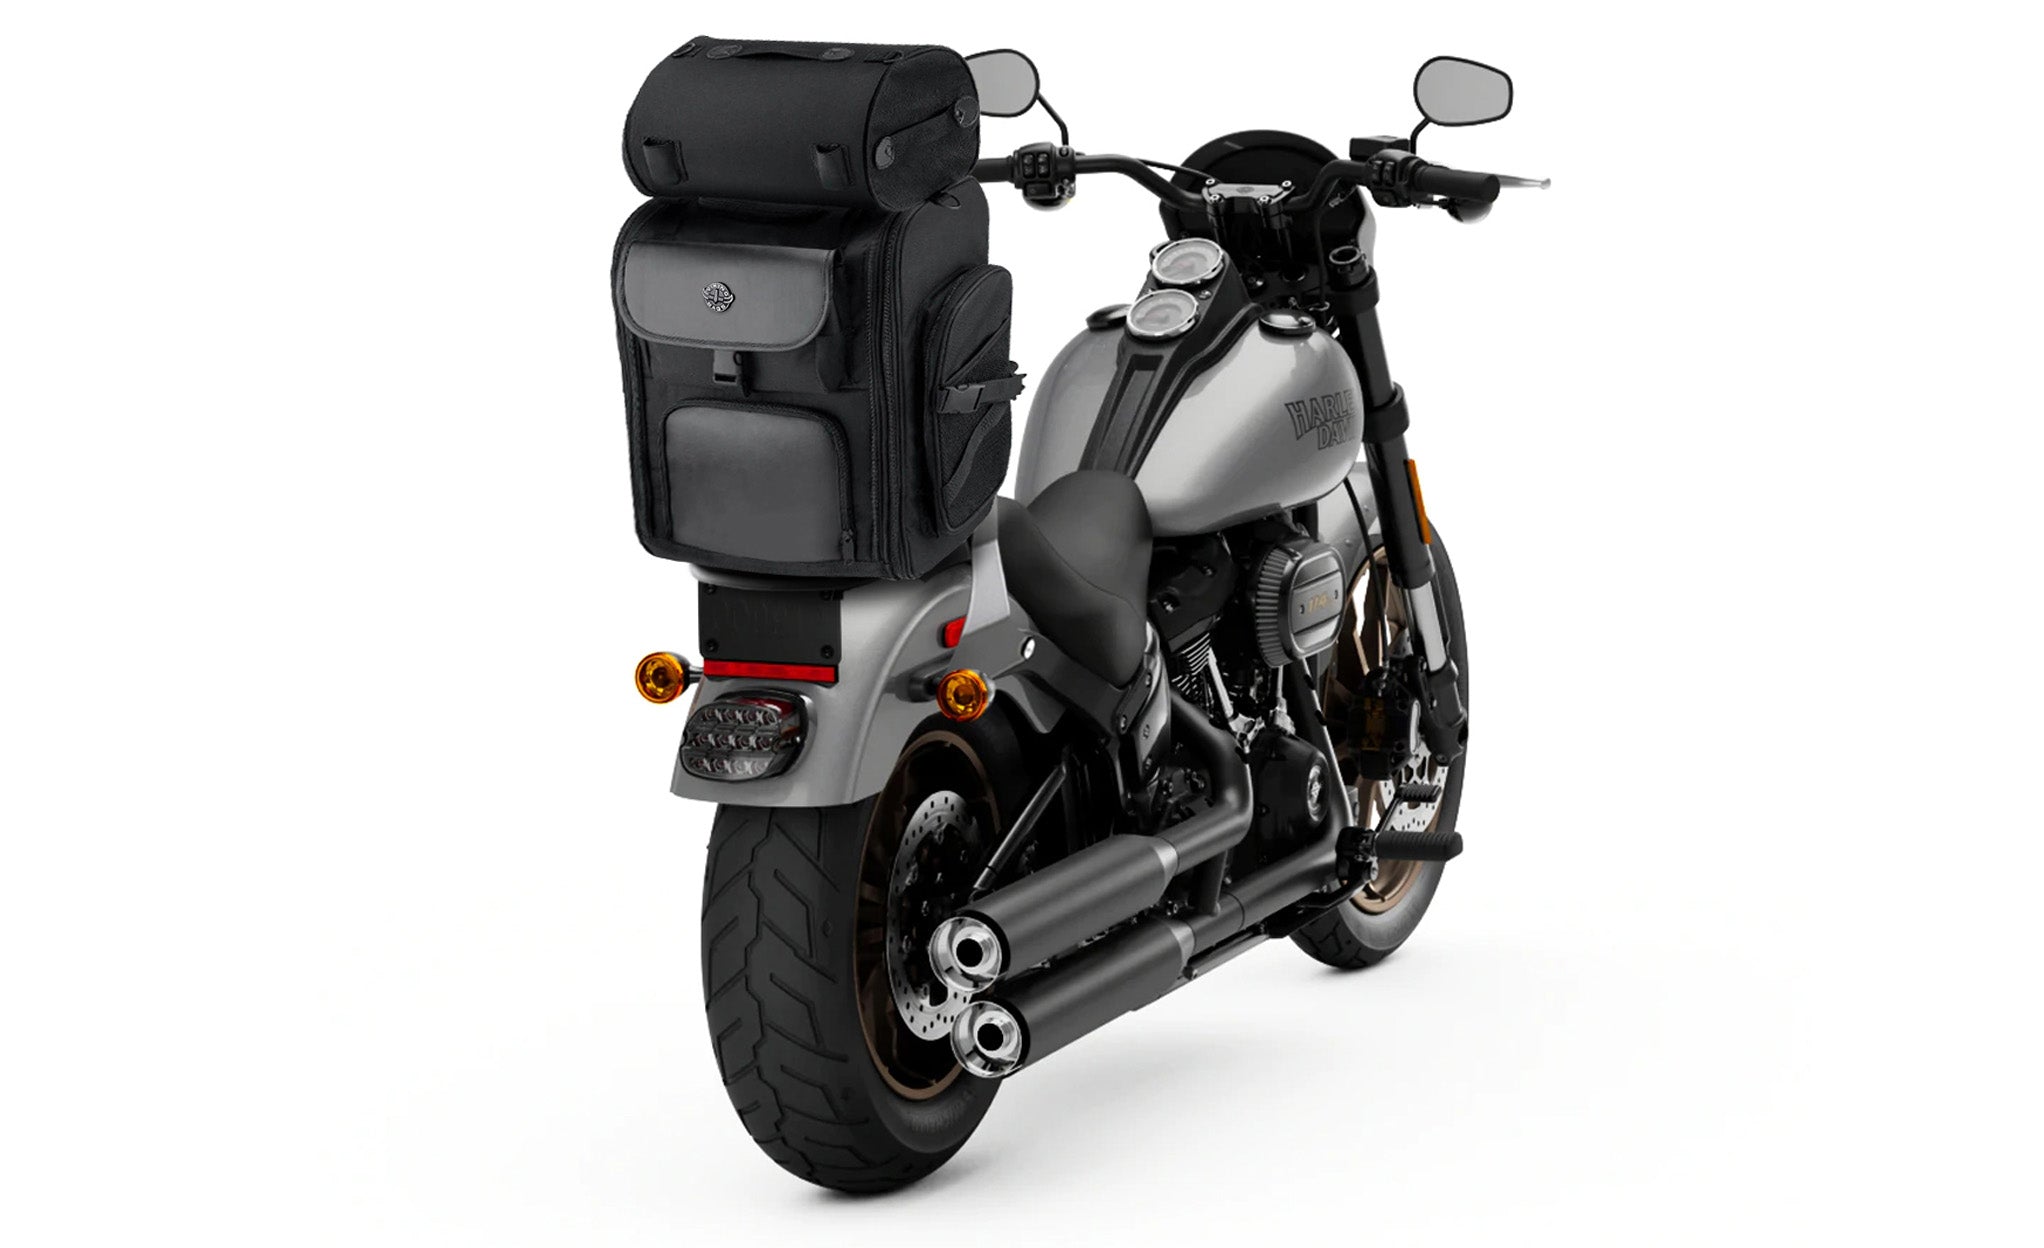 Viking Dwarf Medium Yamaha Motorcycle Tail Bag Bag on Bike View @expand